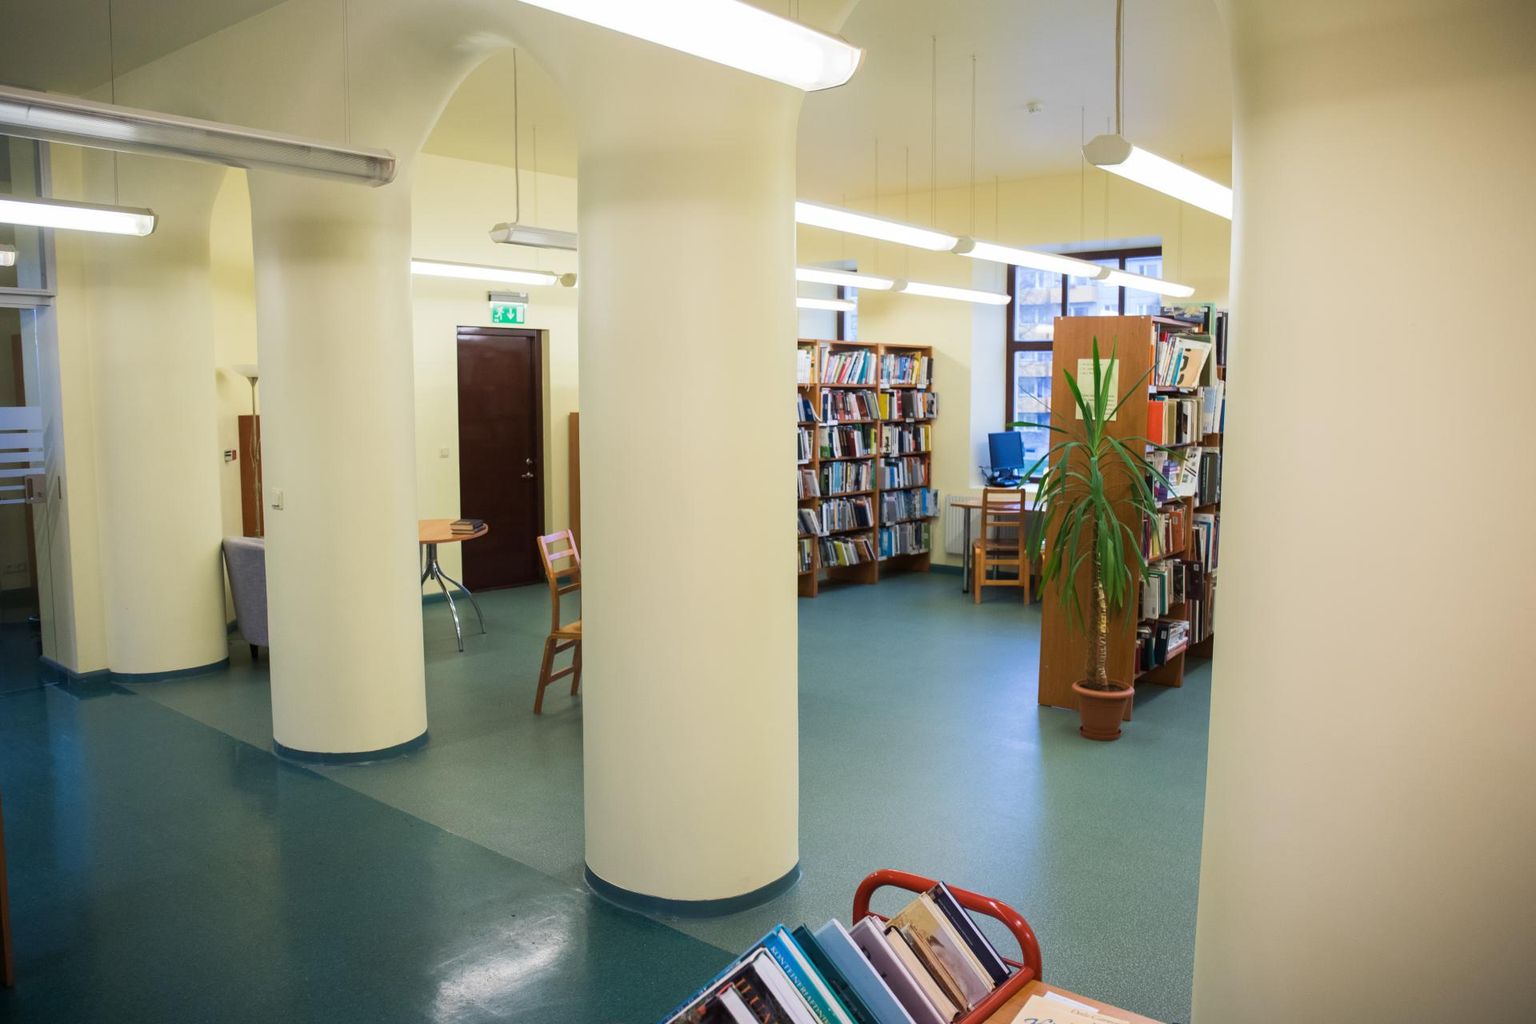 Lääne-Virumaa keskraamatukogu on laupäeval suletud.